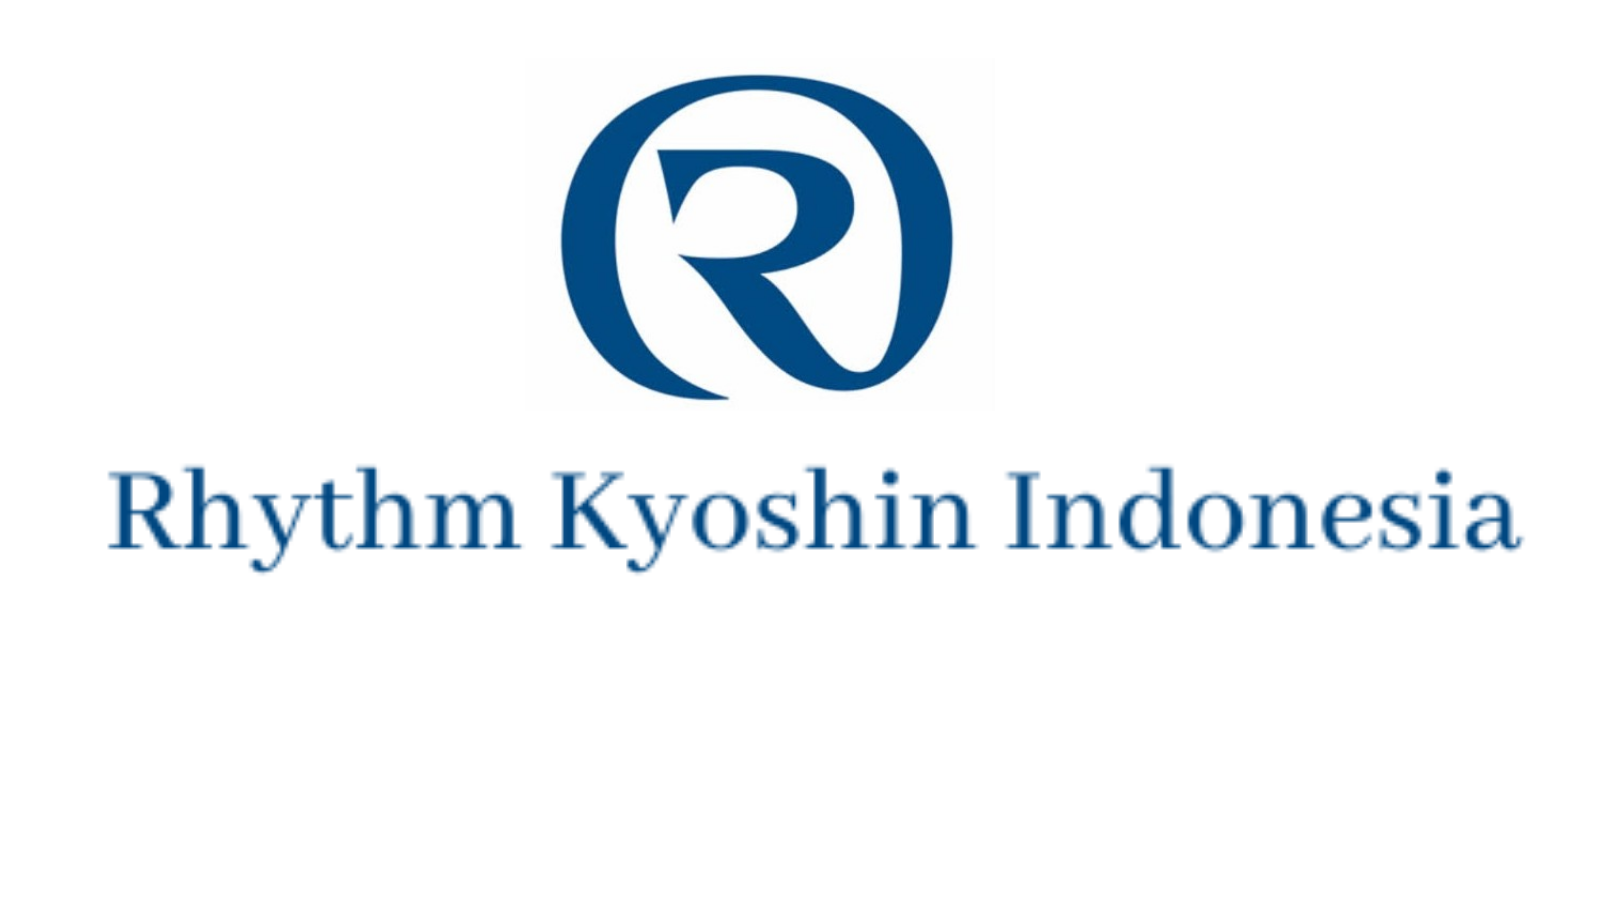 PT. Rhythm Kyoshin Indonesia